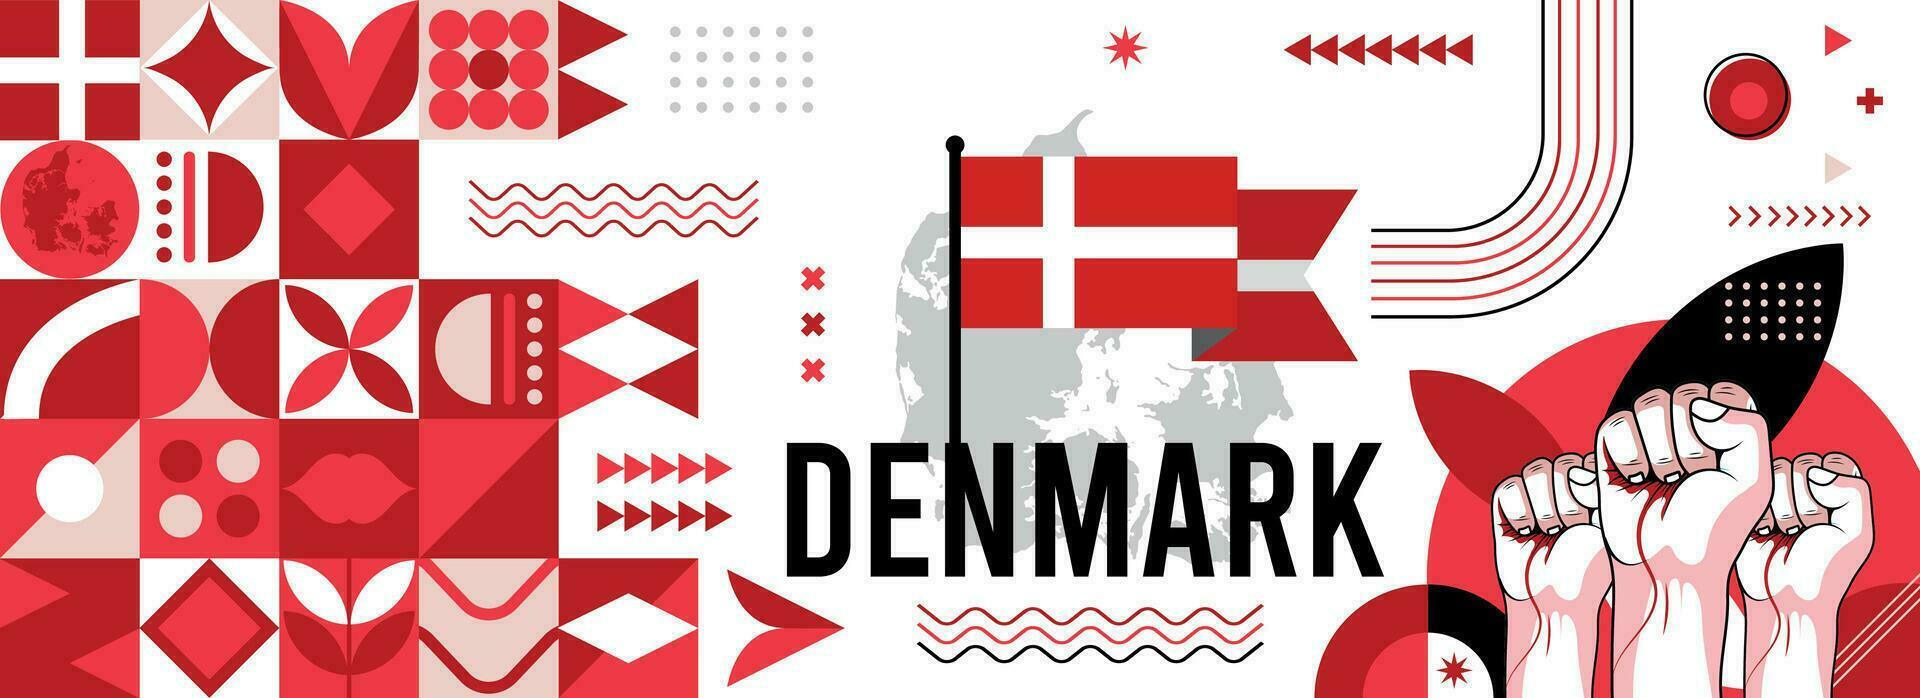 Dänemark National oder Unabhängigkeit Tag Banner zum Land Feier. Flagge und Karte von Dänemark mit angehoben Fäuste. modern retro Design mit Typorgaphie abstrakt geometrisch Symbole. Vektor Illustration.